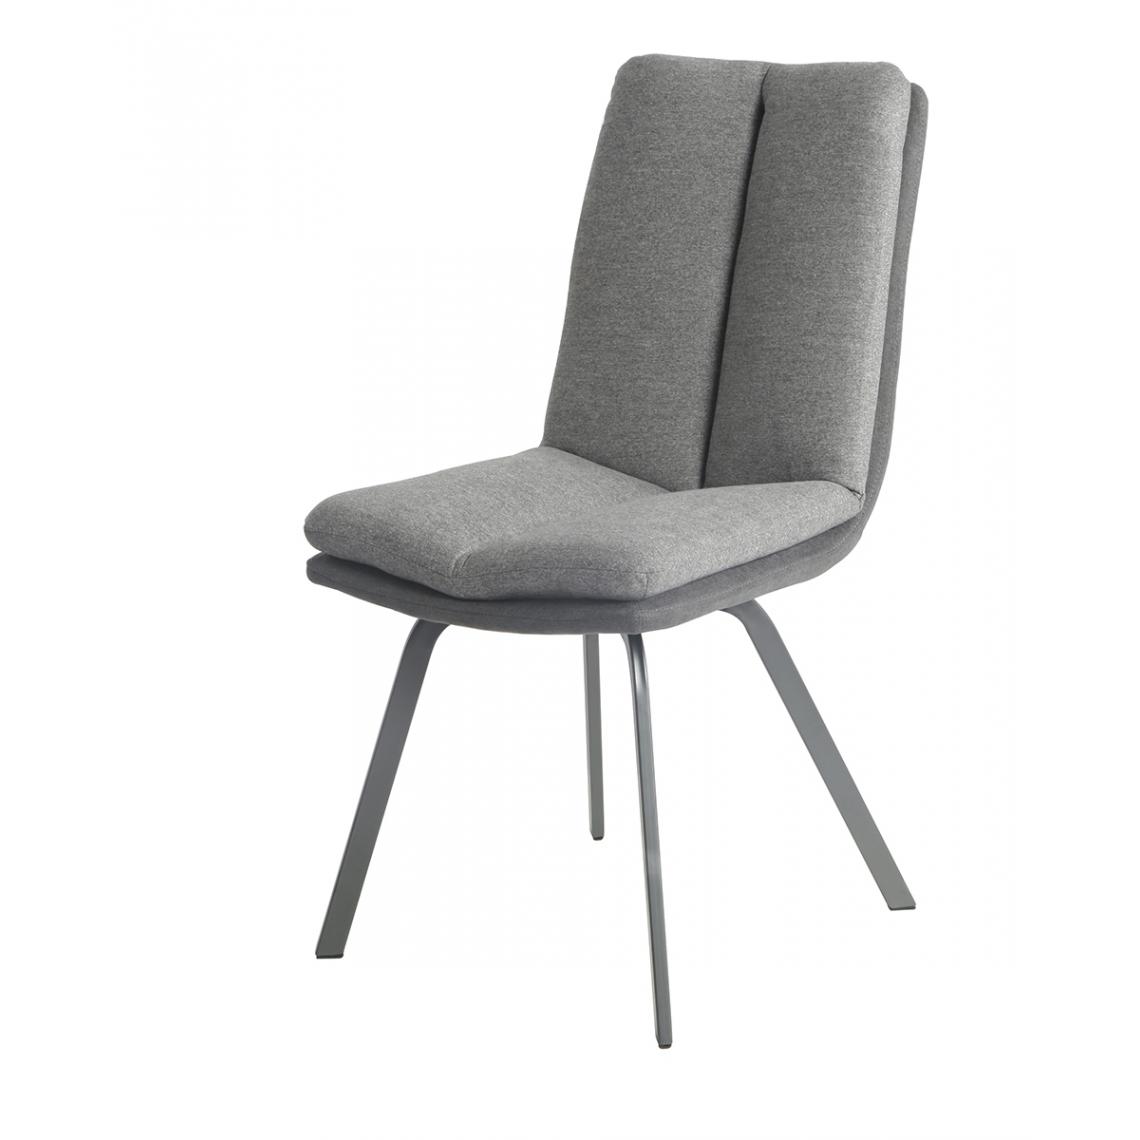 Pegane - Lot de 2 chaises coloris anthracite / grise en métal / tissu - Longueur 47 x Profondeur 65 x hauteur 86 x hauteur Assise 48 cm - Chaises